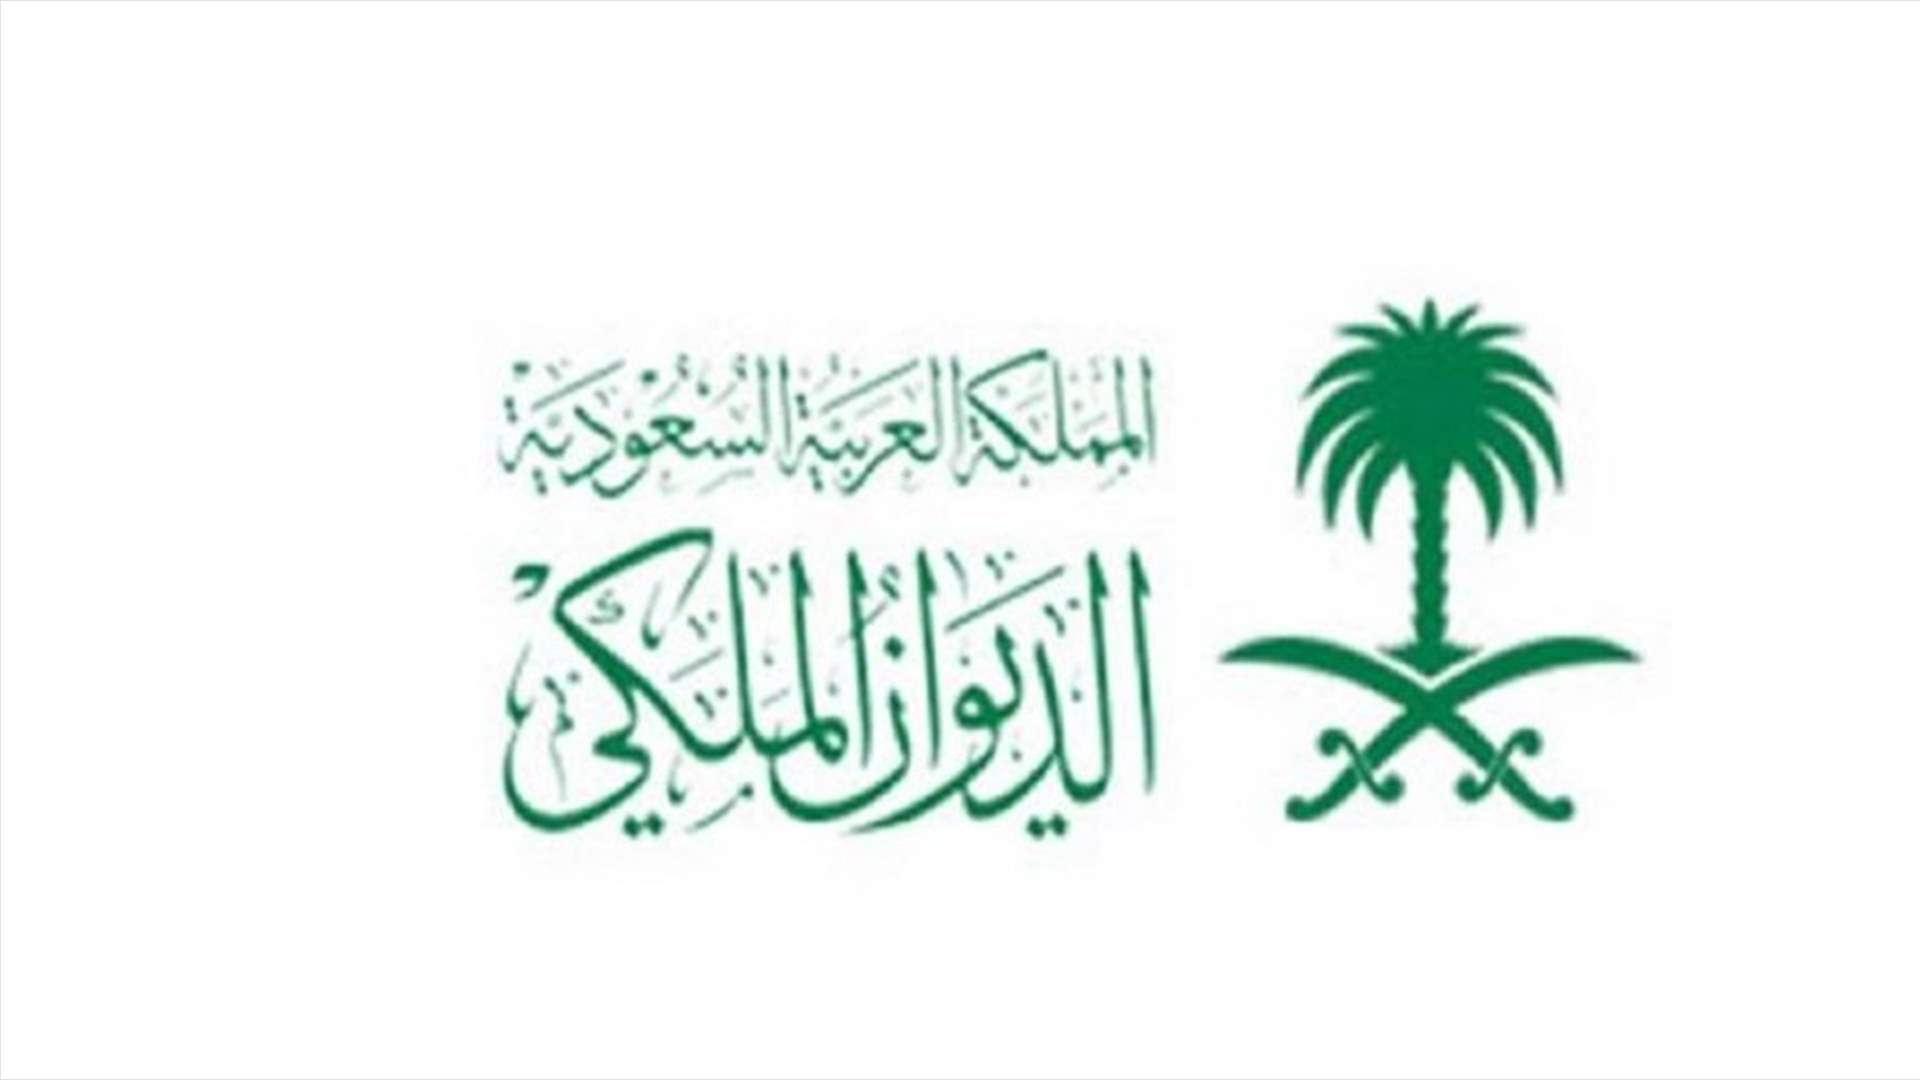 الديوان الملكي السعودي يعلن تفاصيل الاتصال بين بن سلمان وماكرون وميقاتي